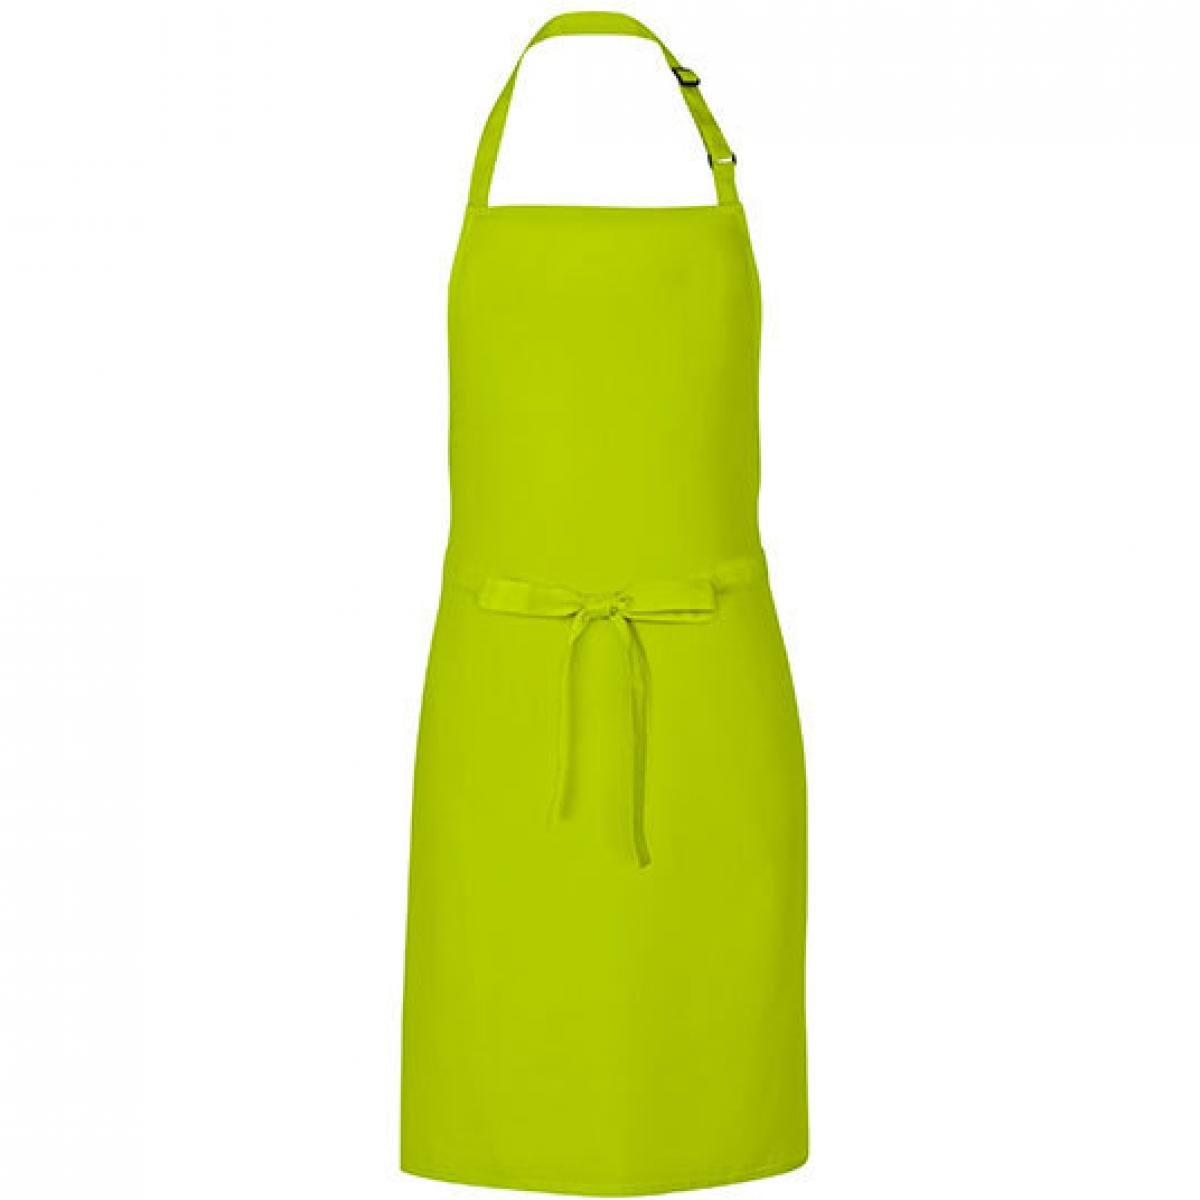 Hersteller: Link Kitchen Wear Herstellernummer: MS8572 Artikelbezeichnung: Multi Apron - 72 x 85 cm - Waschbar bis 60 °C Farbe: Lime (ca. Pantone 382)